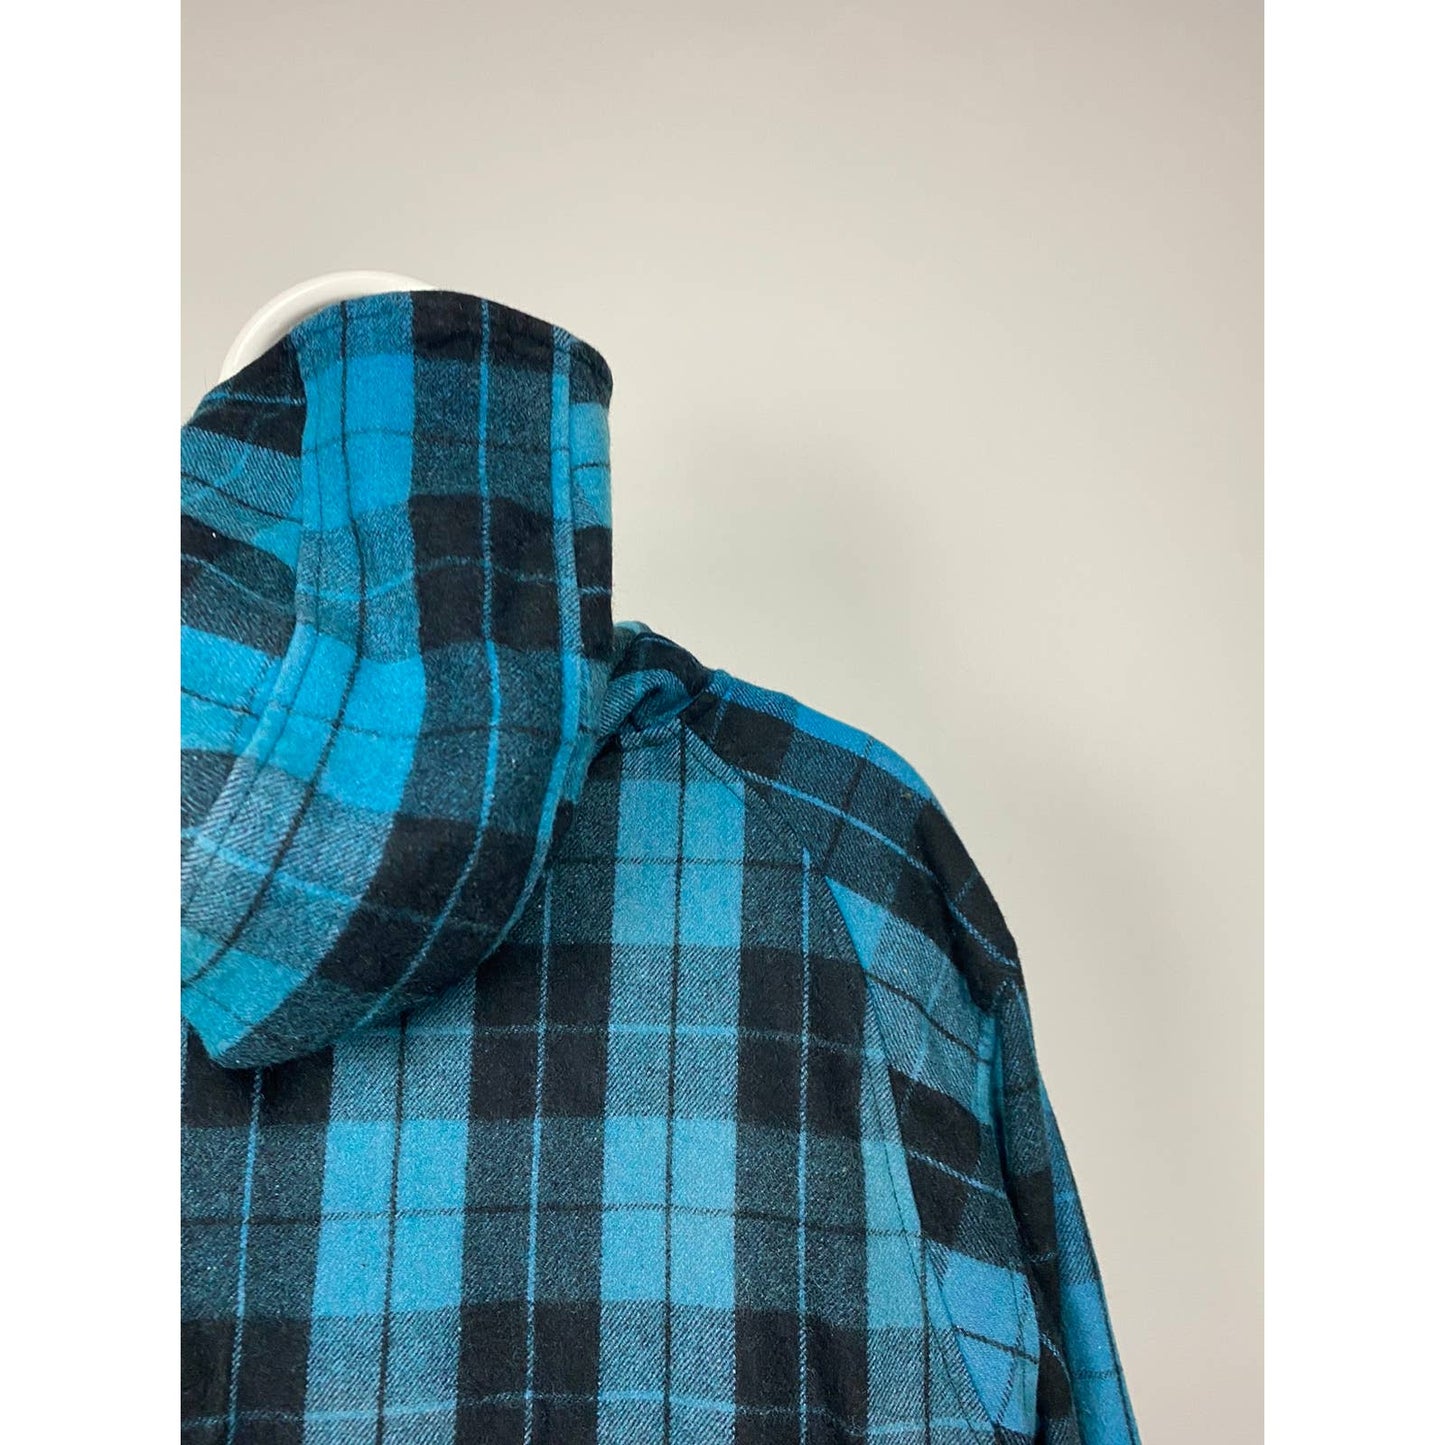 Evisu Japan vintage zip up wooden hooded jacket black blue